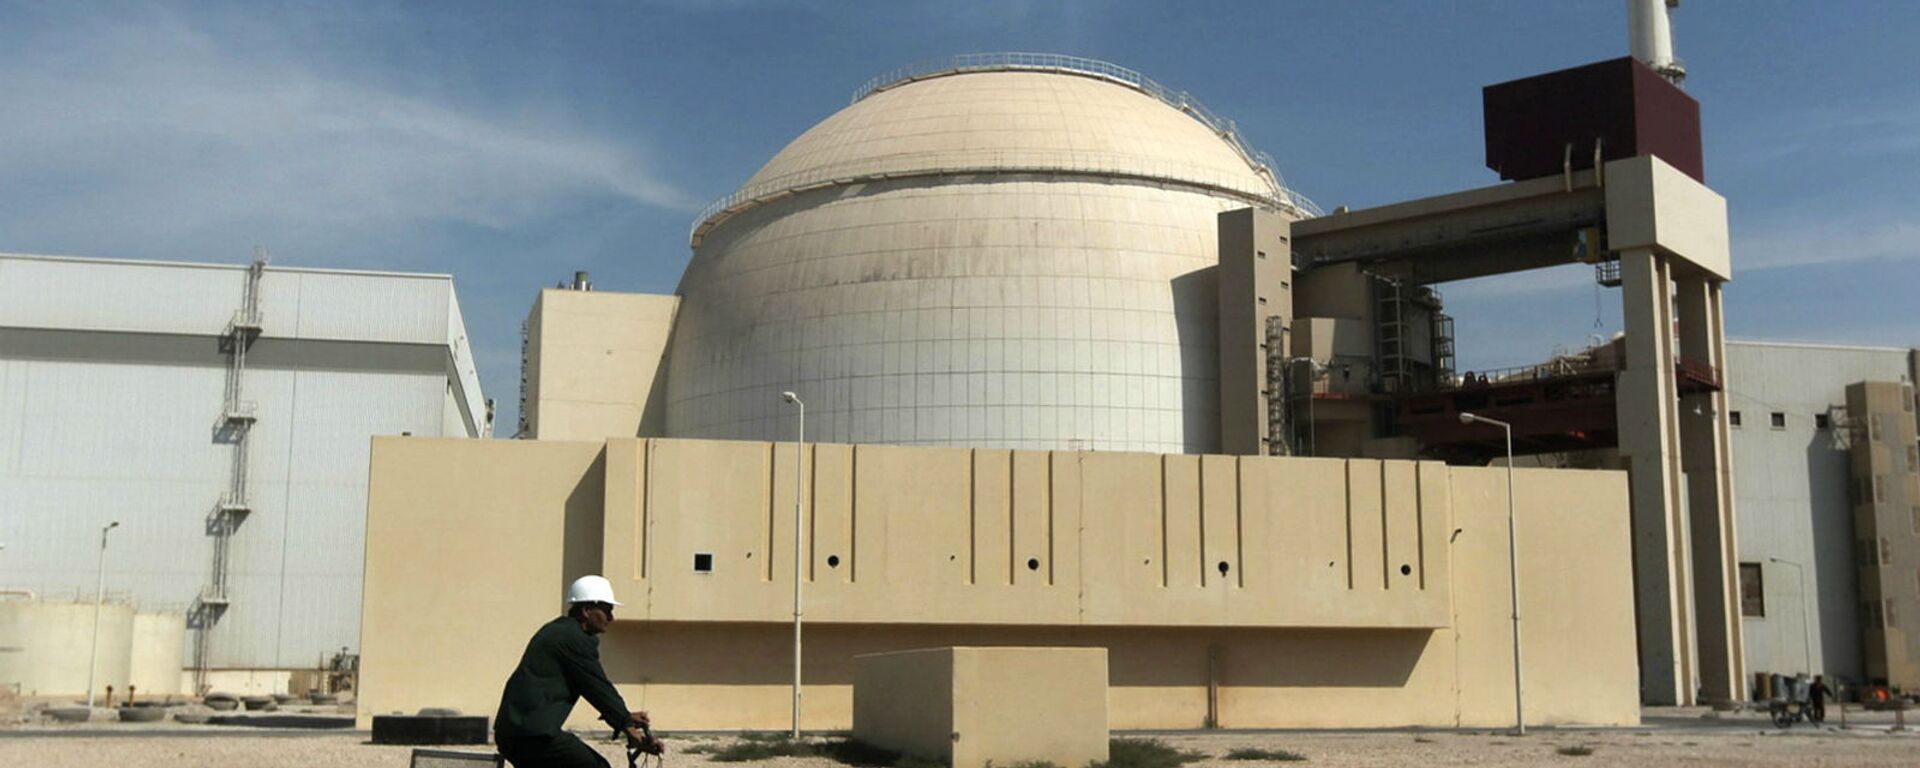 Здание реактора АЭС Бушер (26 октября 2010). Иран - Sputnik Армения, 1920, 27.11.2021